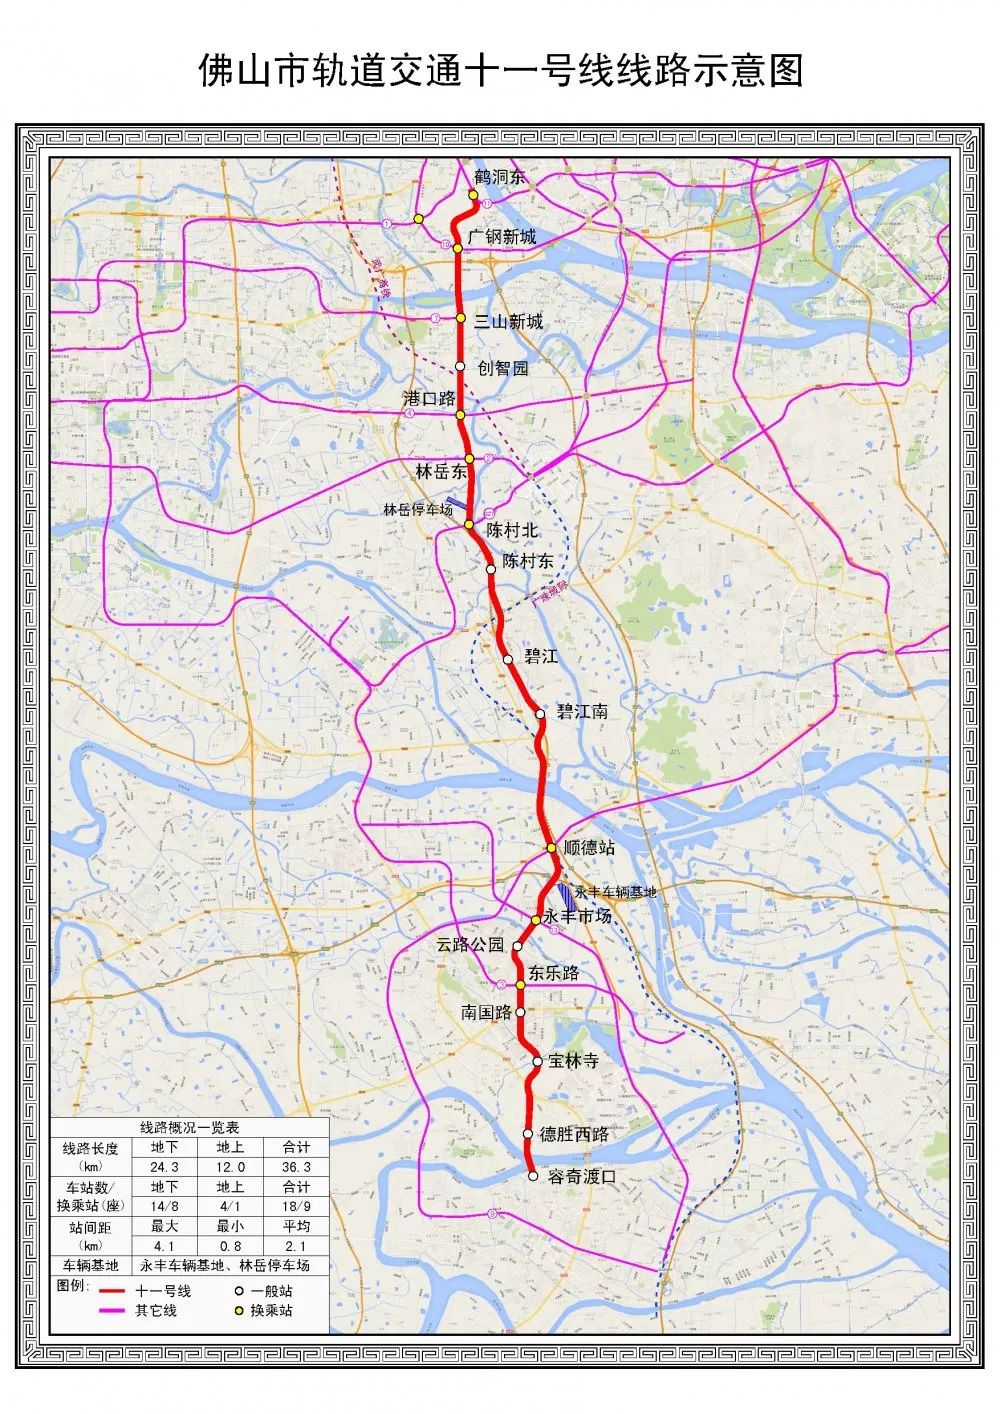 最新消息佛山地铁11号线容奇渡口鹤洞东计划2020年动工预计工期6年